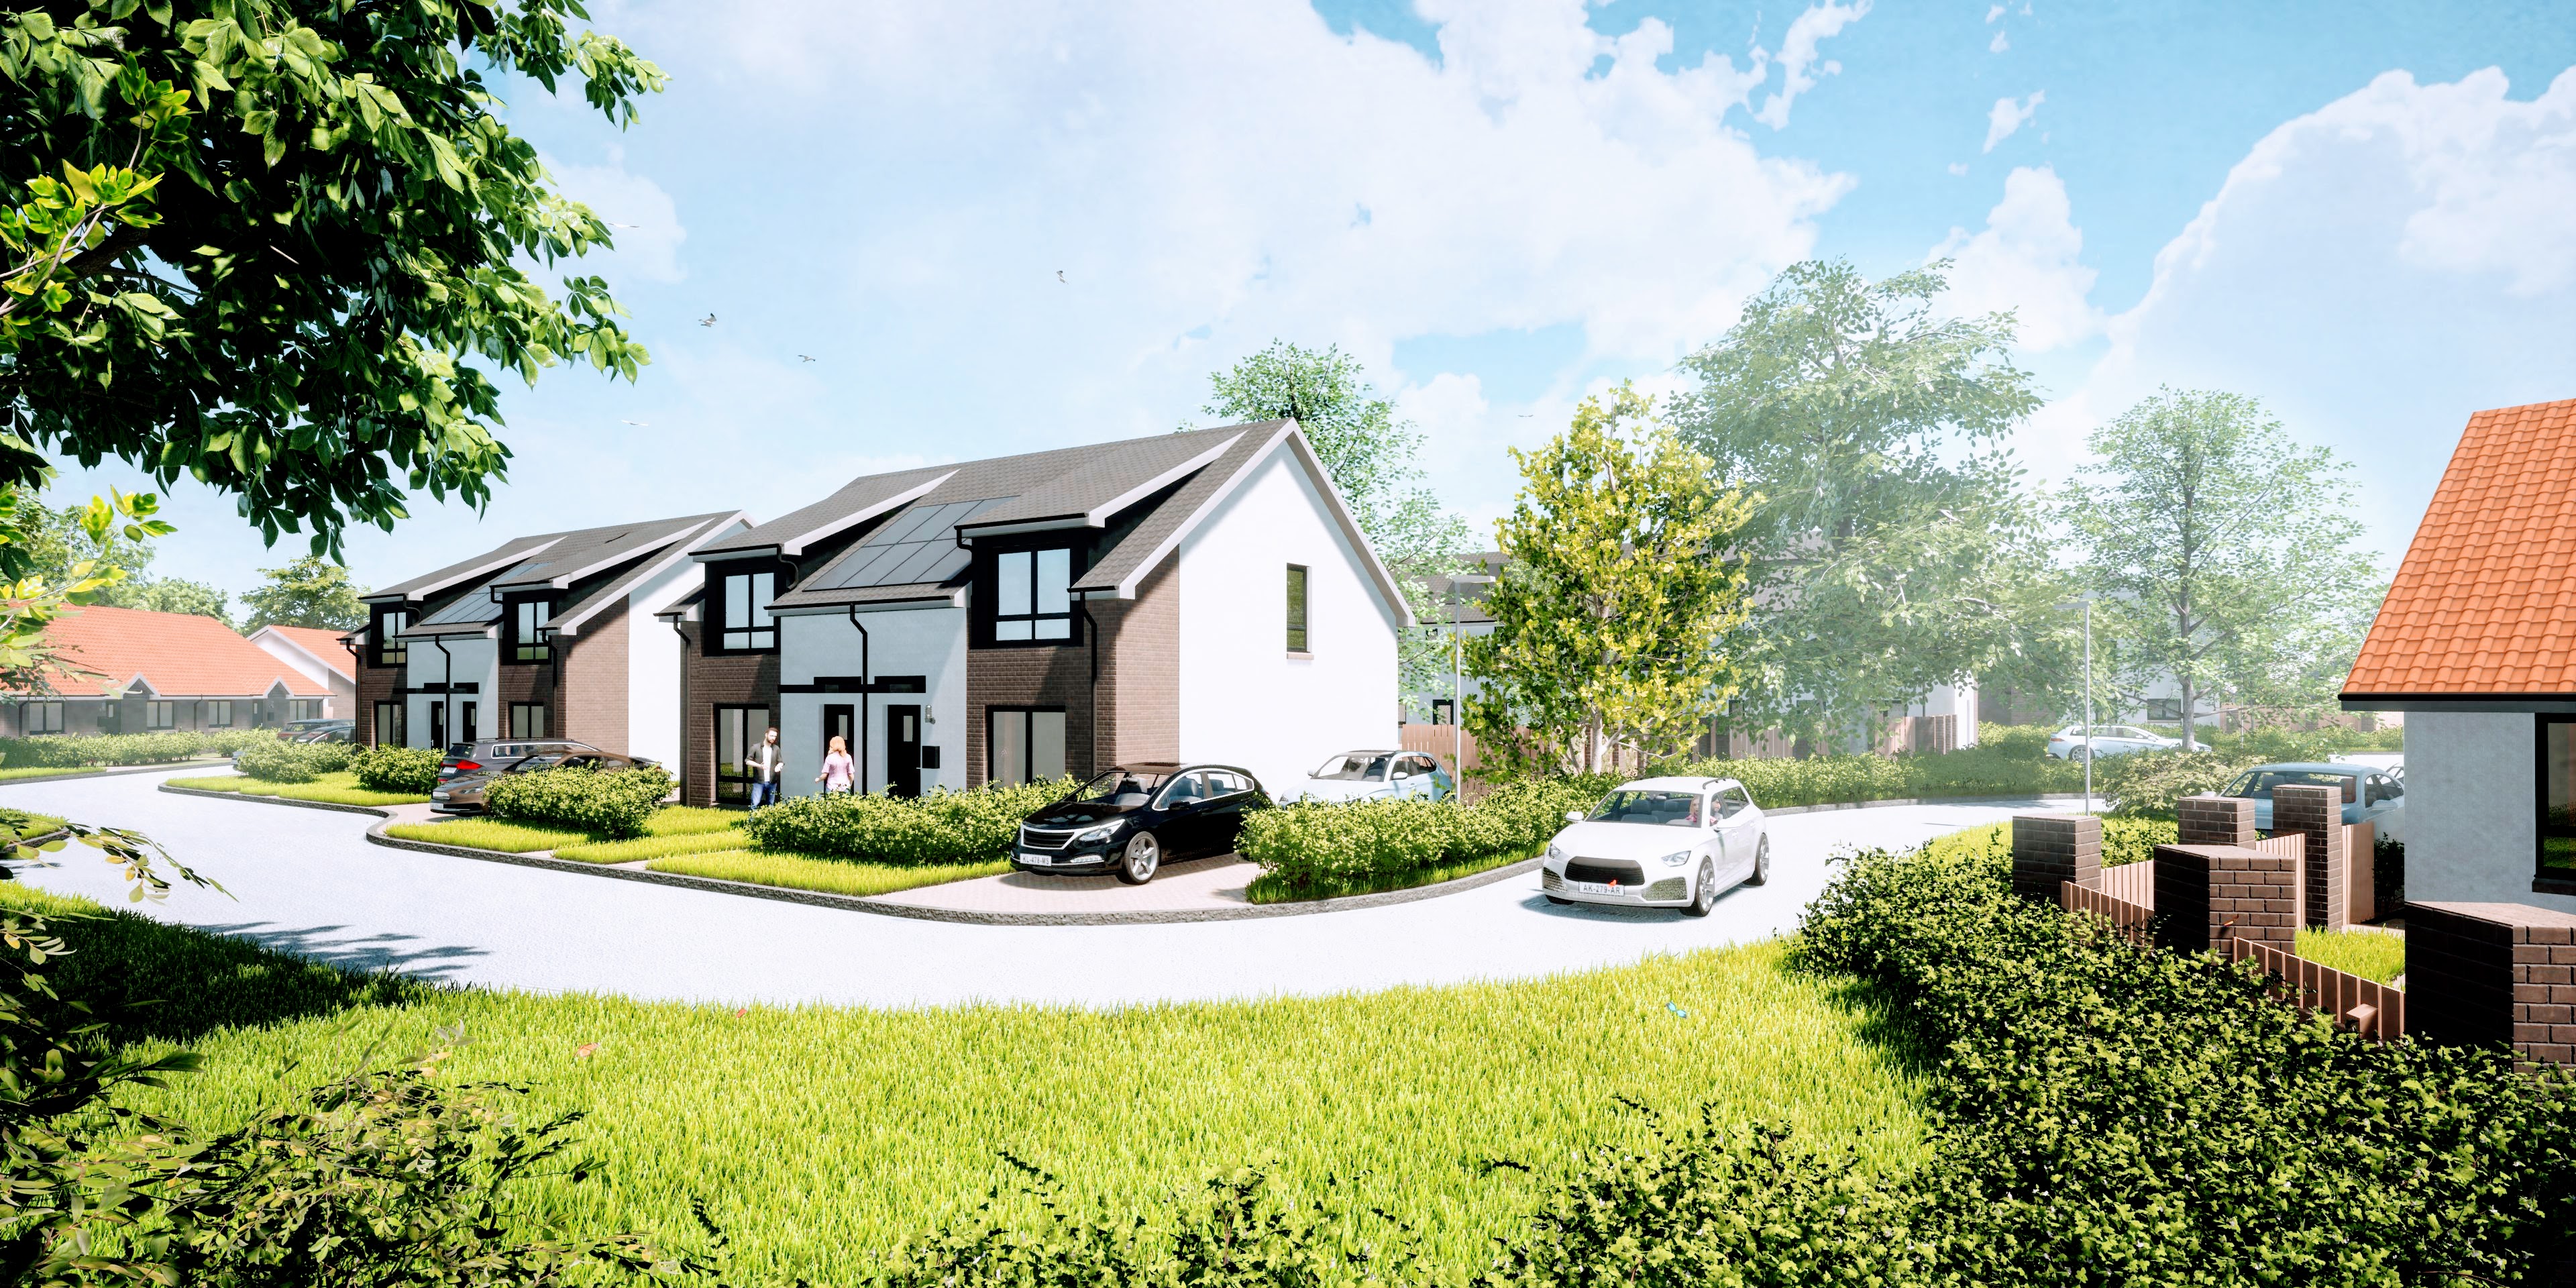 Campion Homes starts work on £6.9m Passivhaus development in Fife